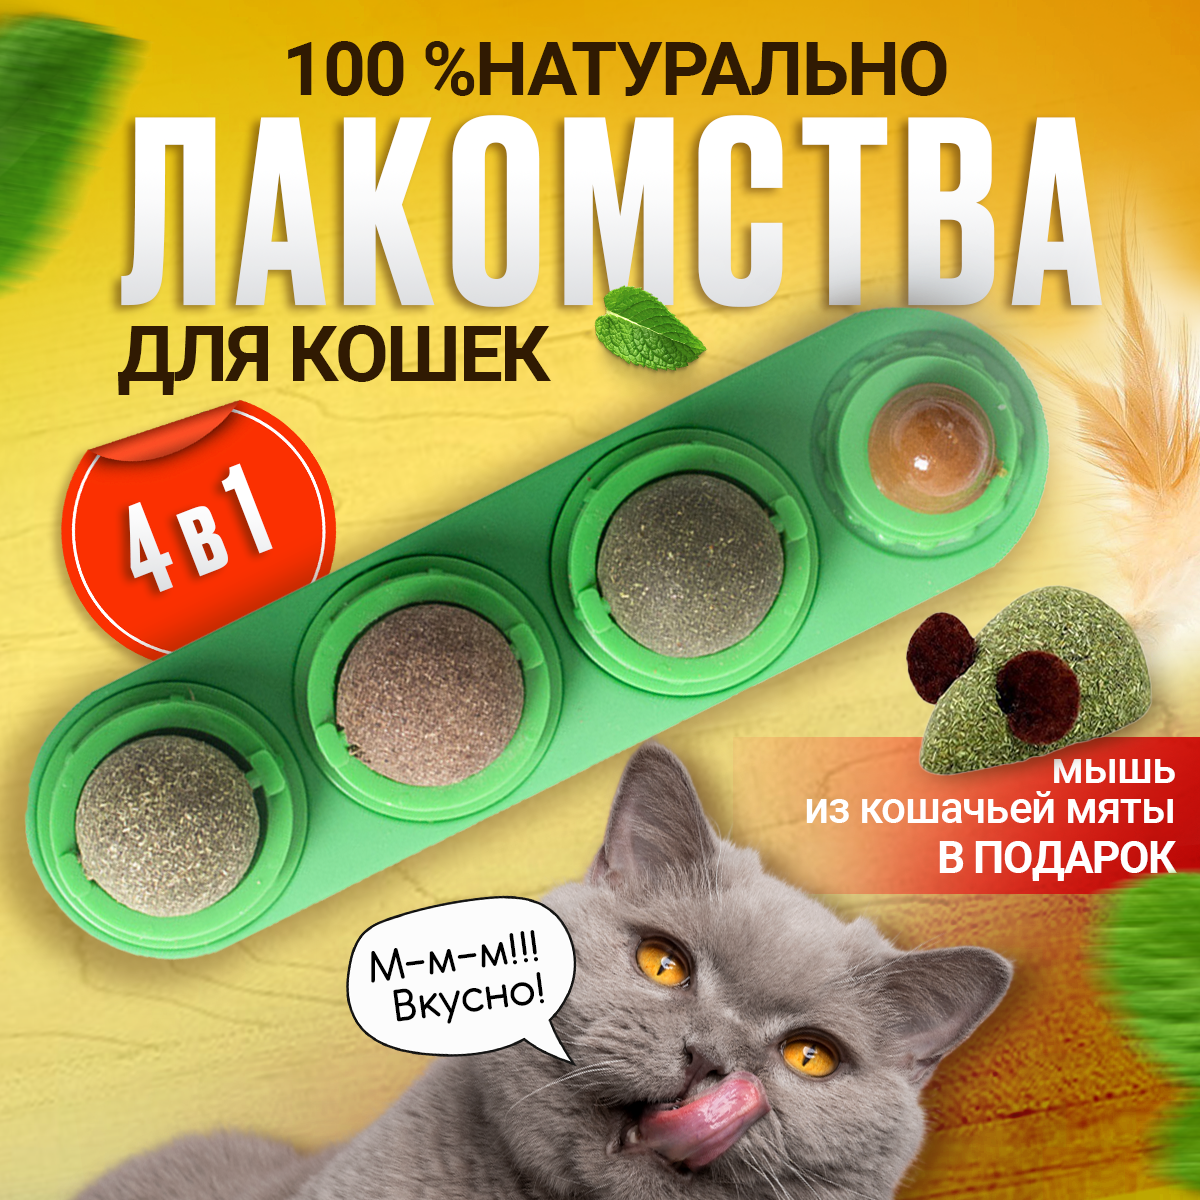 Леденец с кошачьей мятой, шарик лакомство для кошек 3 шт + конфета + мышка из кошачьей мяты . Цвет зеленый